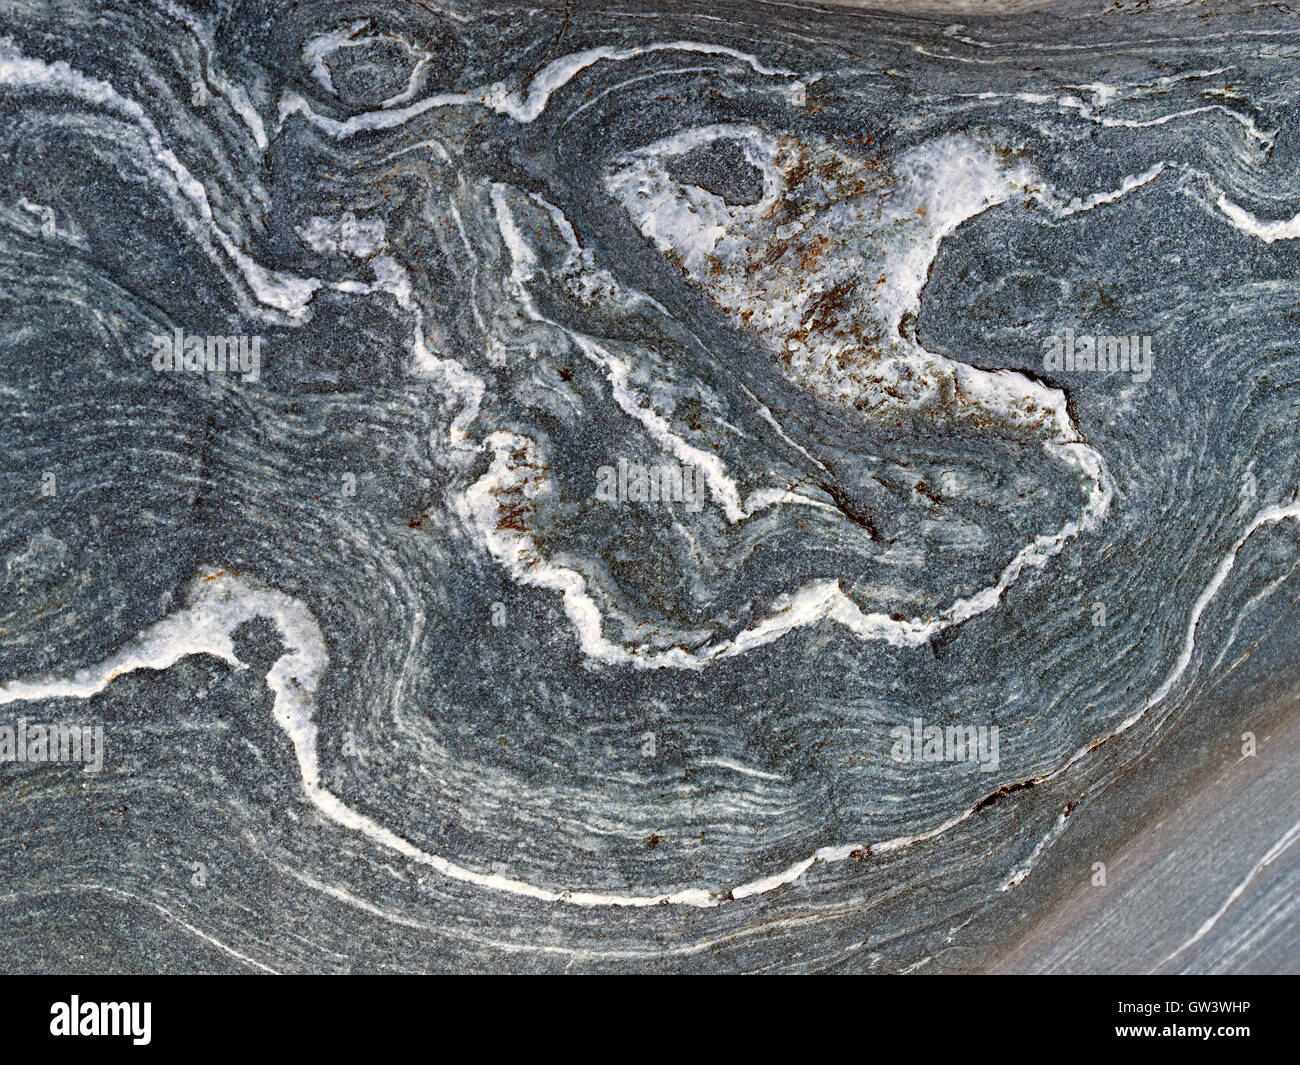 Tourbillons et de replis des veines de quartz blanc ou de marbre gris en strates, Uragaig rock, à l'île de Colonsay, Ecosse, Royaume-Uni. Banque D'Images